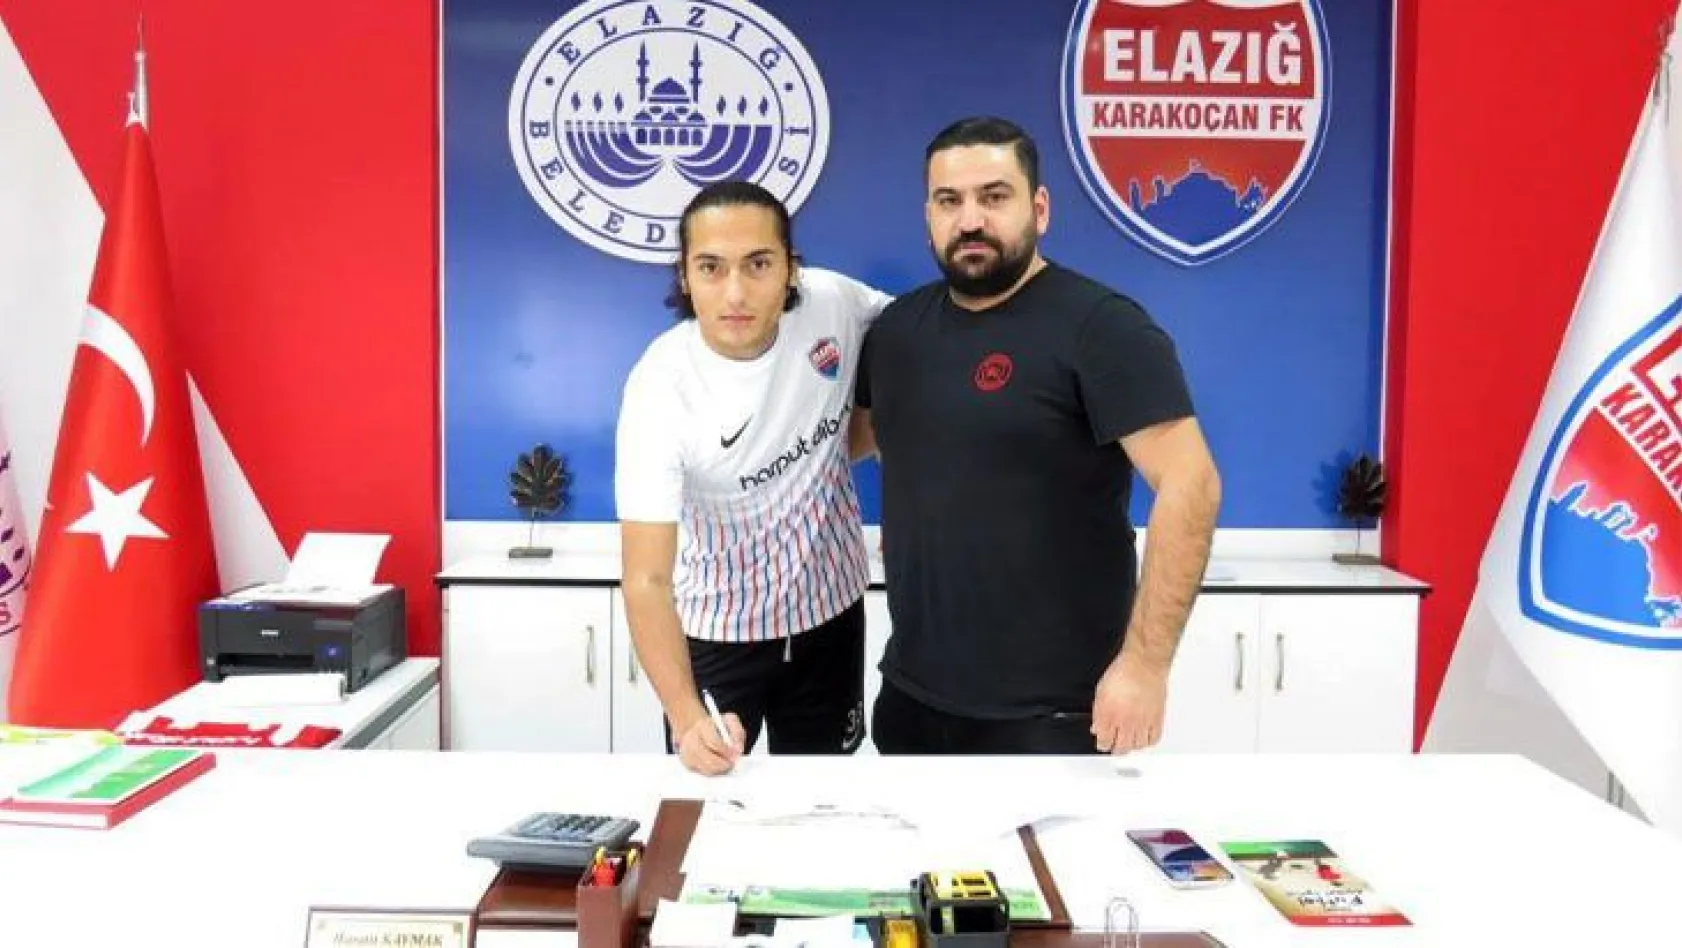 Elazığ Karakoçan FK'ya yeni transfer